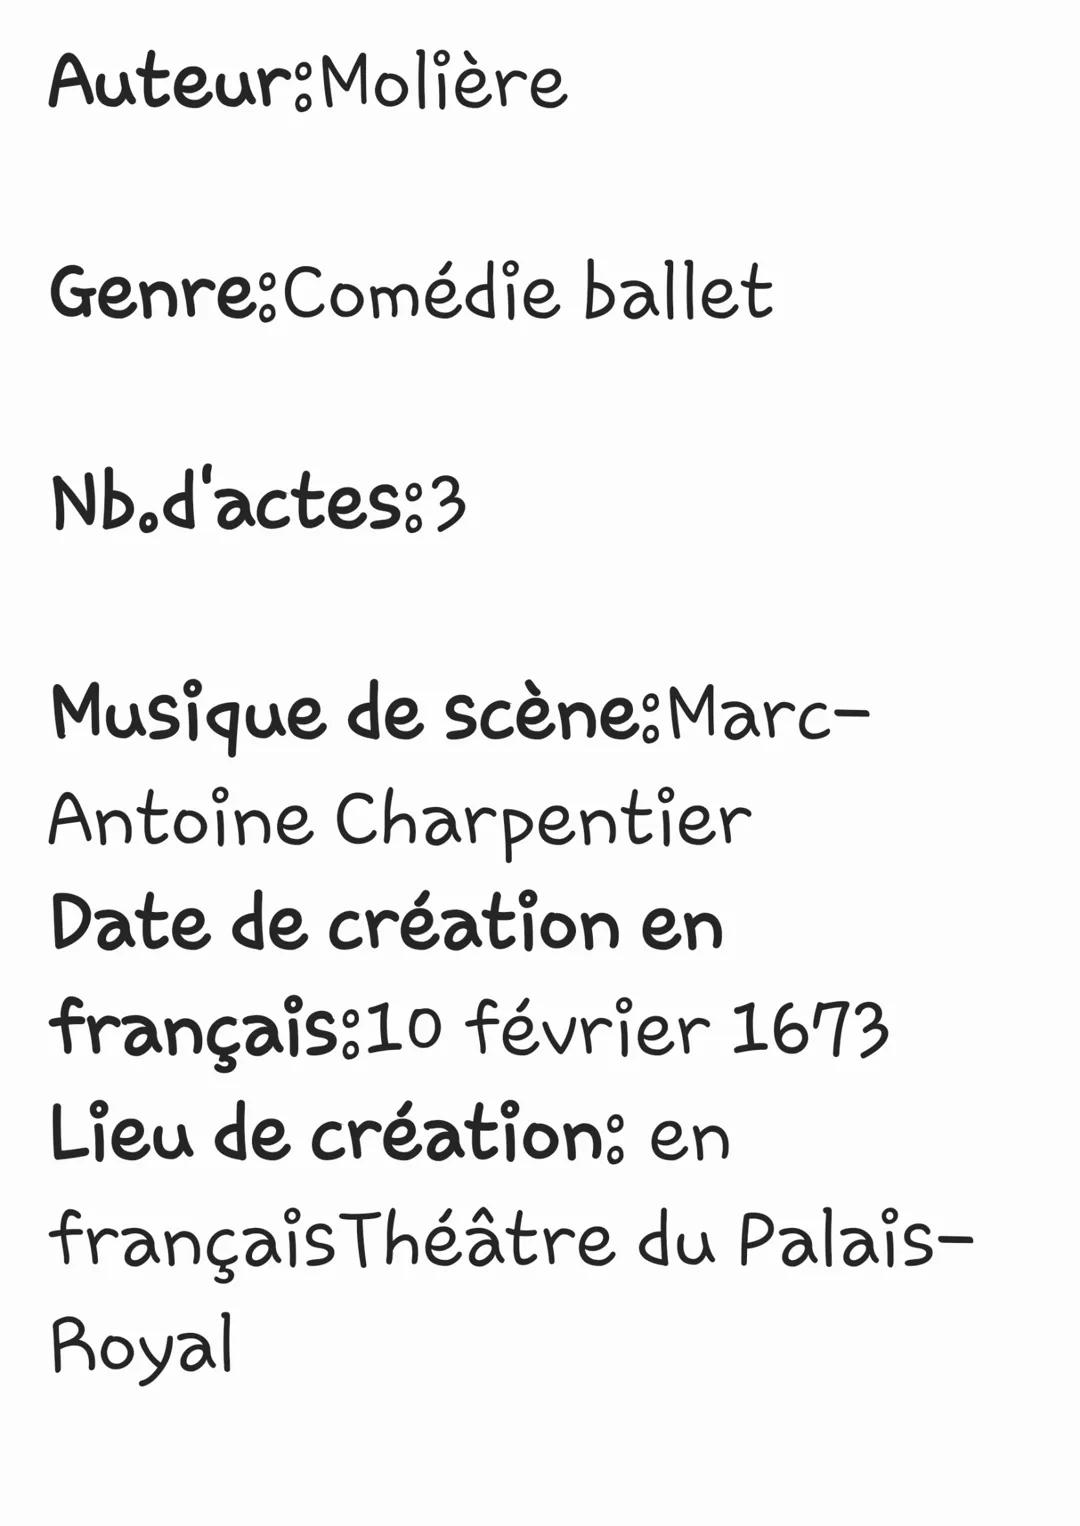 Auteur:Molière
Genre:Comédie ballet
Nb.d'actes:3
Musique de scène: Marc-
Antoine Charpentier
Date de création en
français:10 février 1673
Li